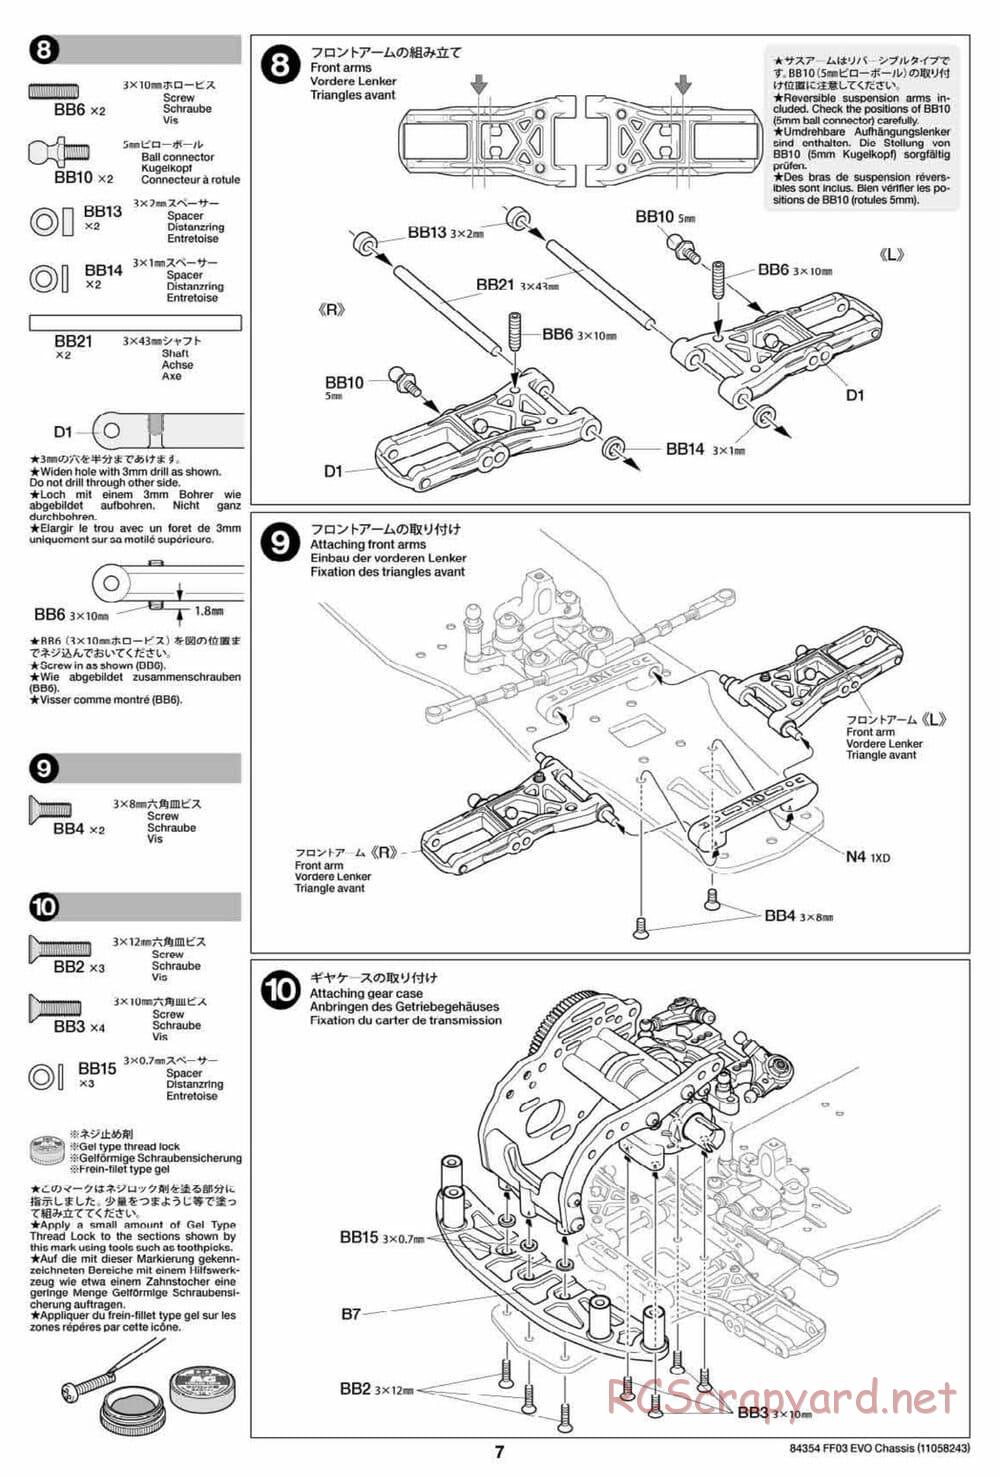 Tamiya - FF-03 Evo Chassis - Manual - Page 7